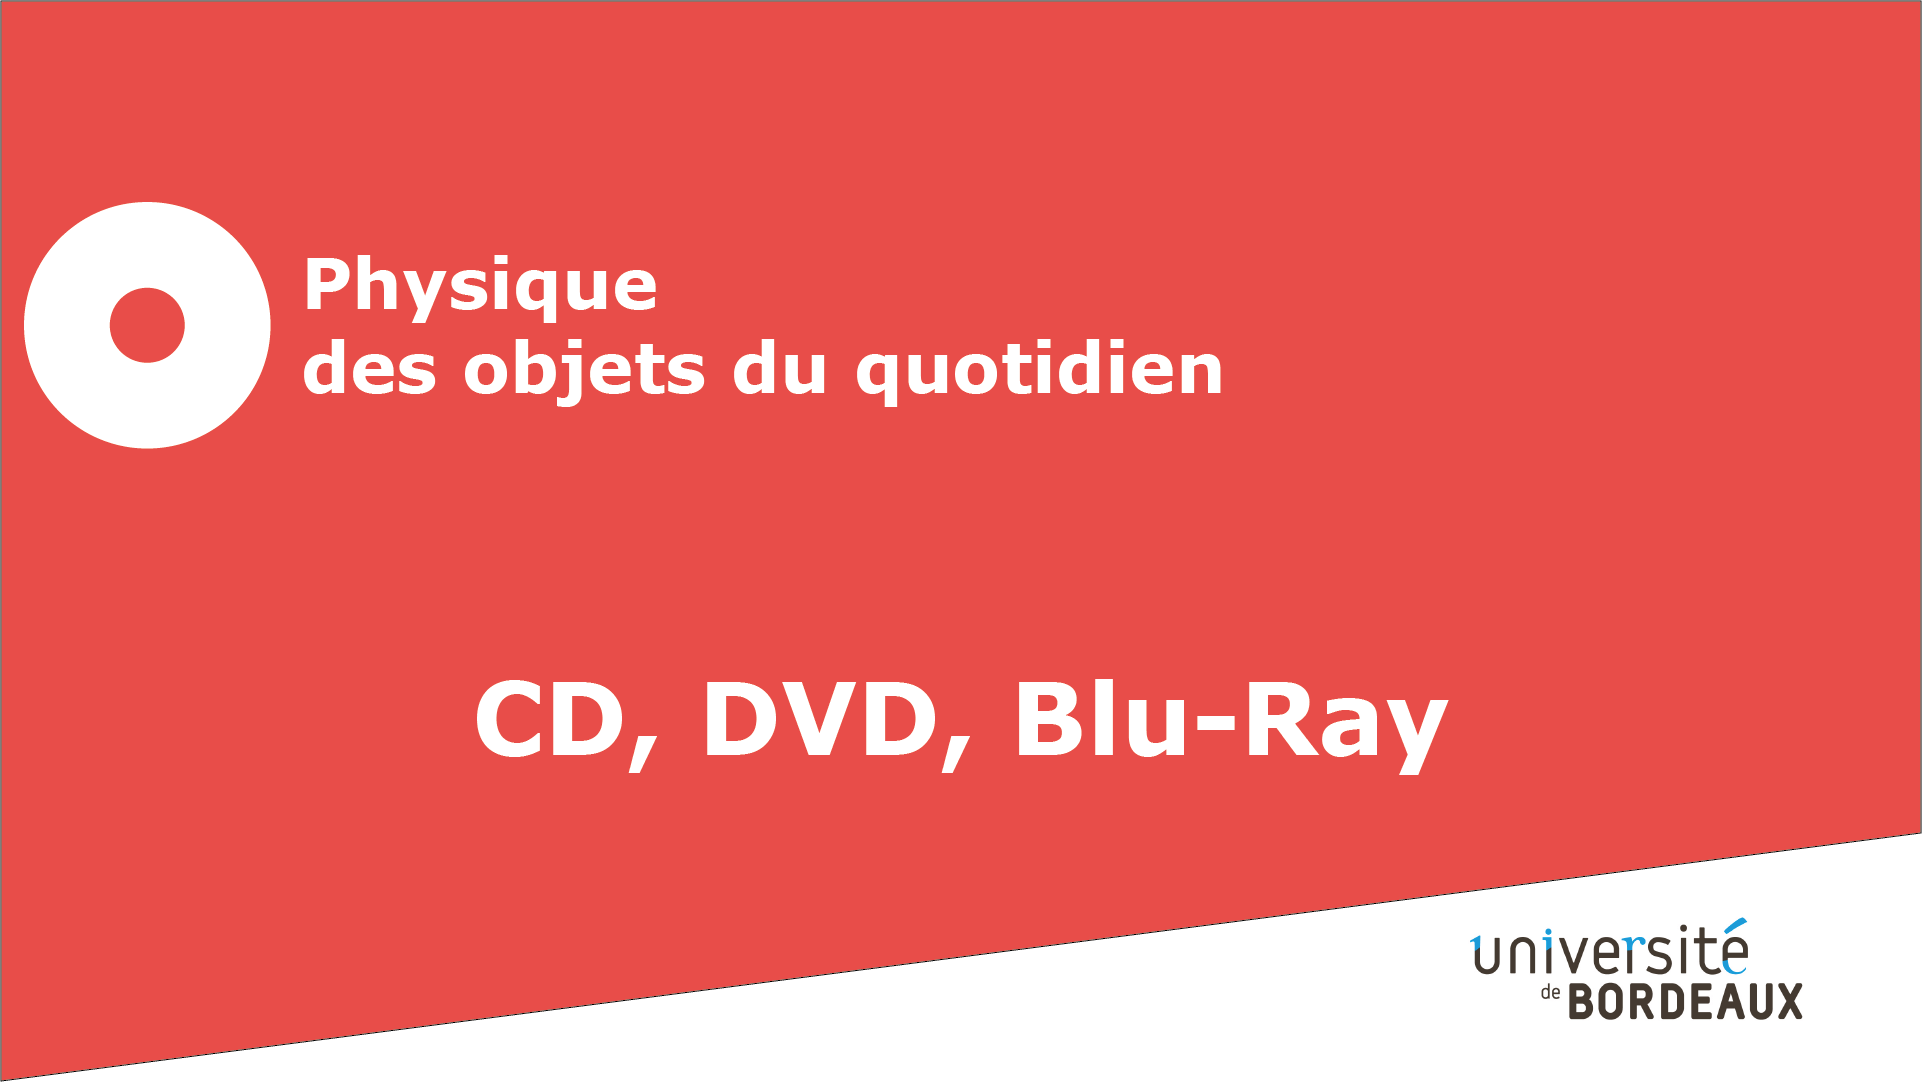 16 - CD, DVD, Blu-ray / La lecture du disque optique et le codage binaire